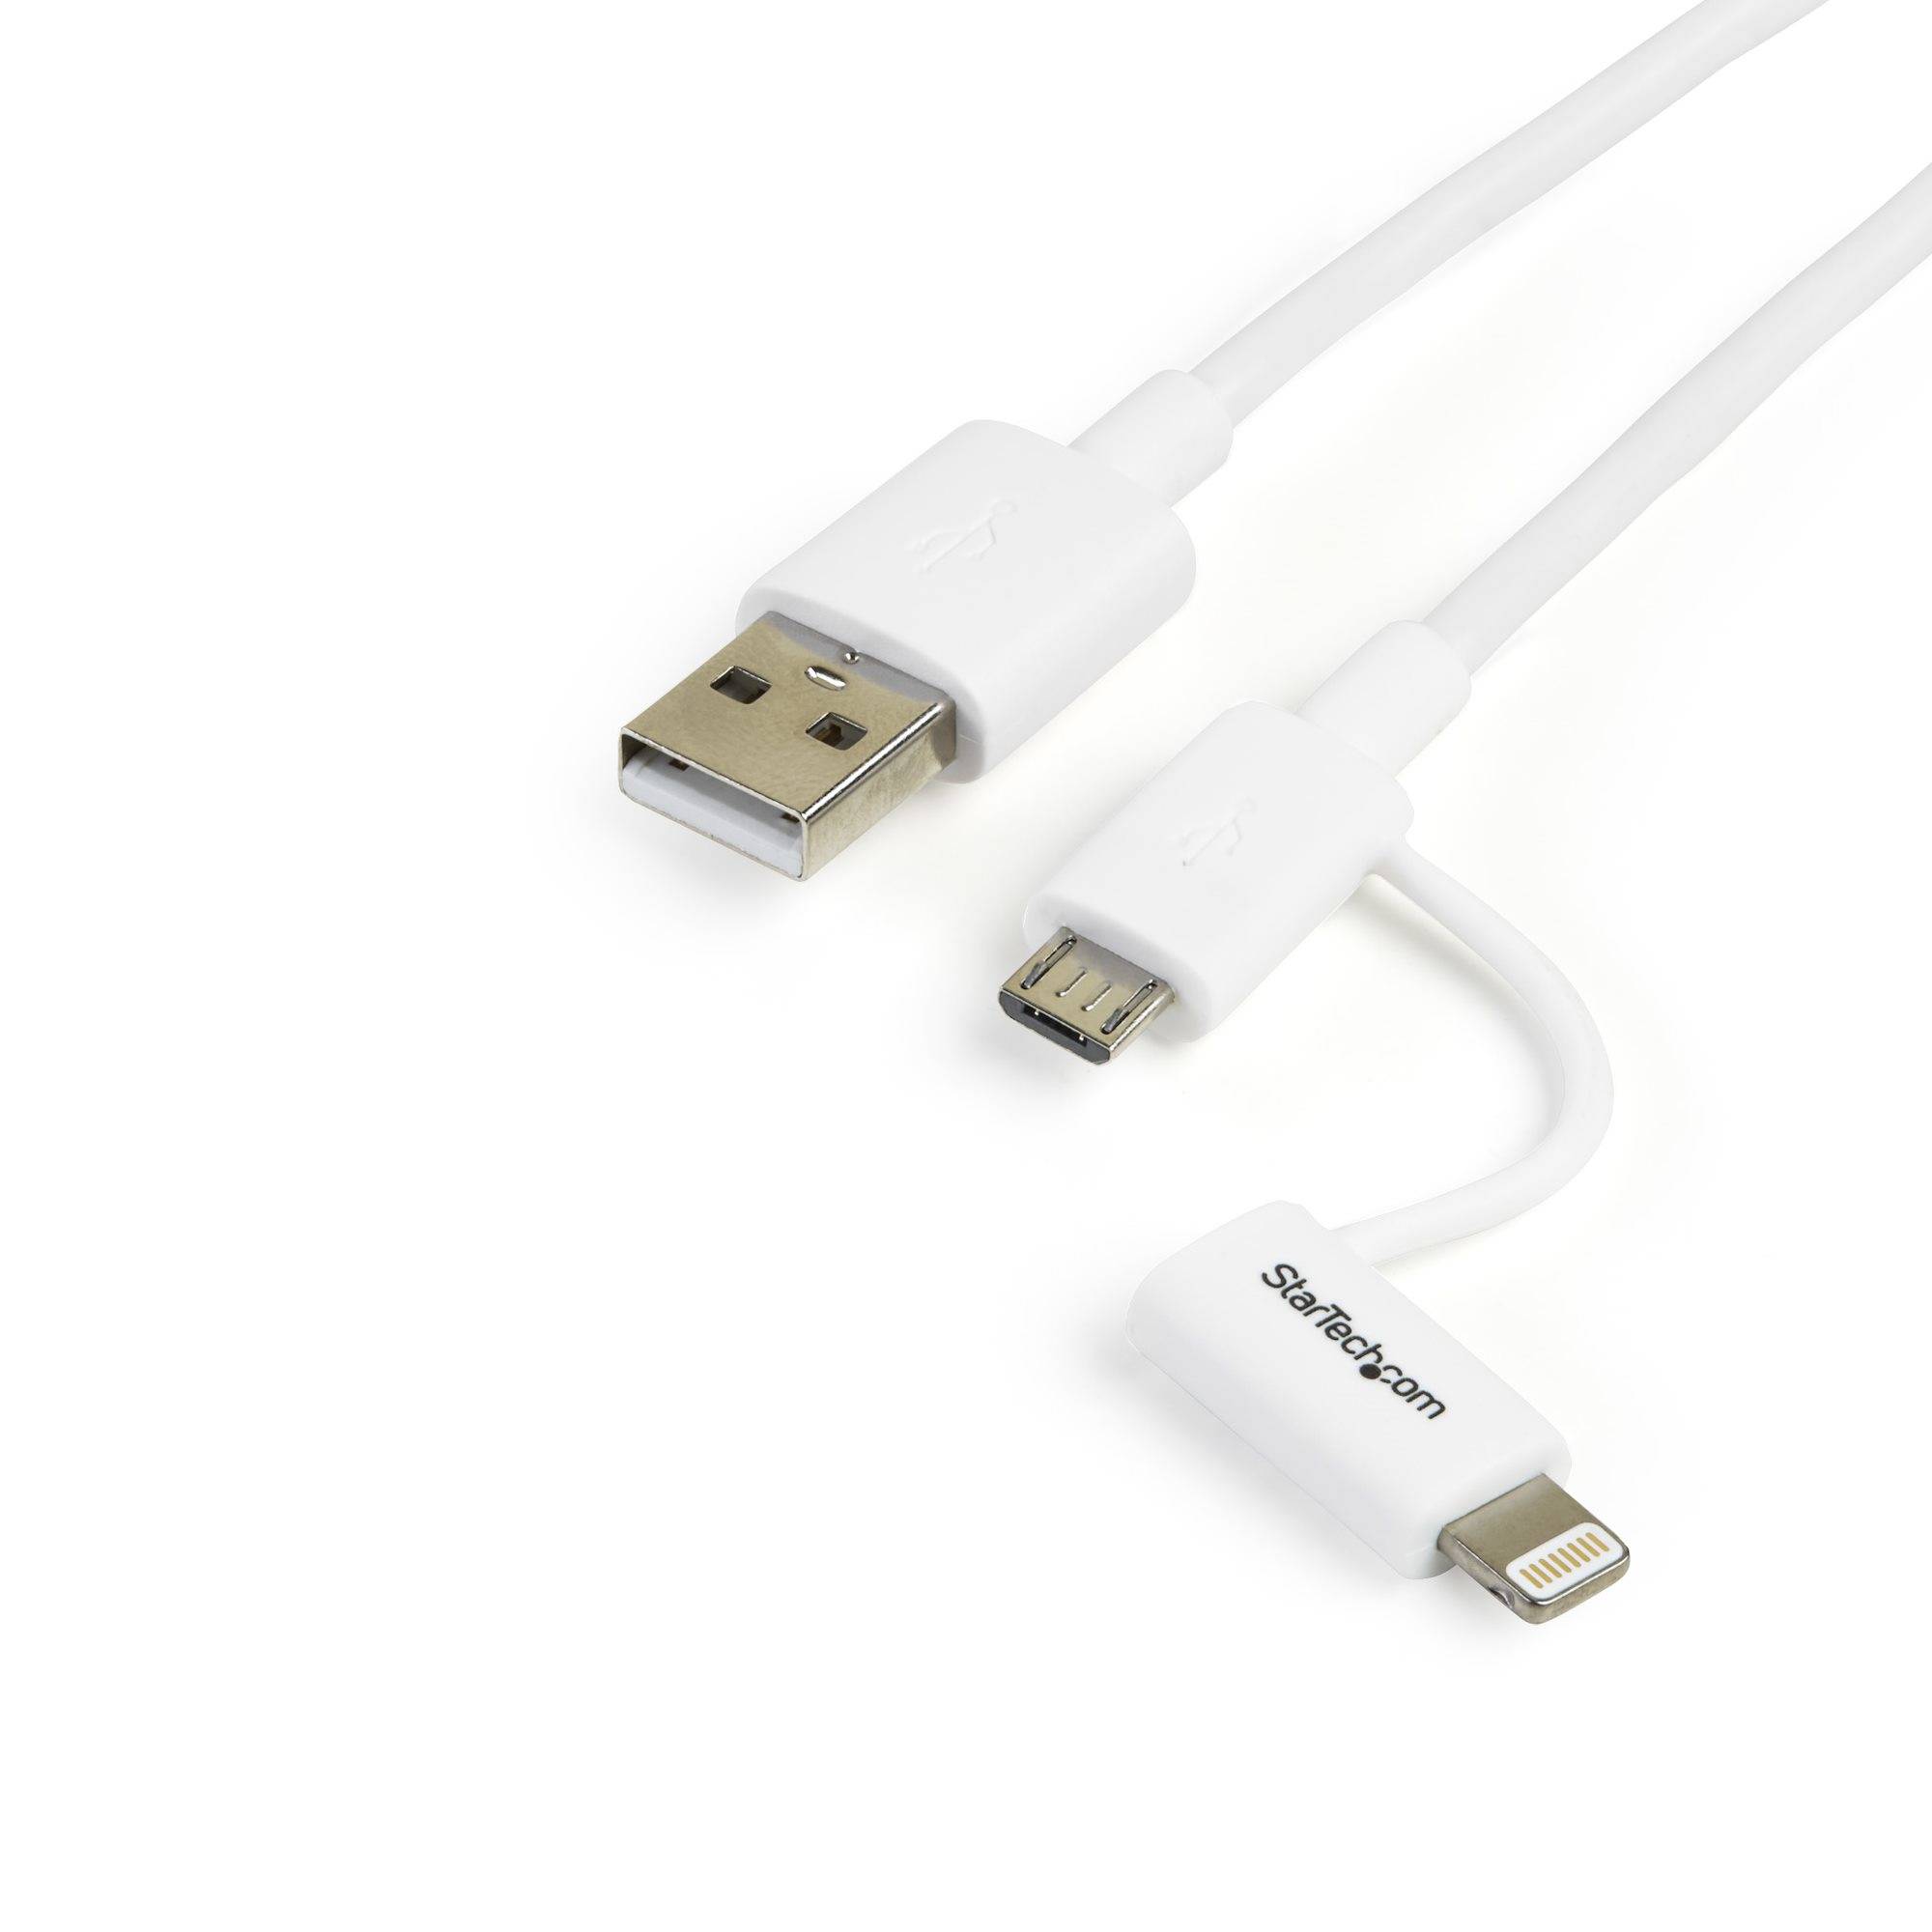 Rca Informatique - Image du produit : CABLE LIGHTNING OU MICRO USB VERS USB 1 M - M/M - BLANC